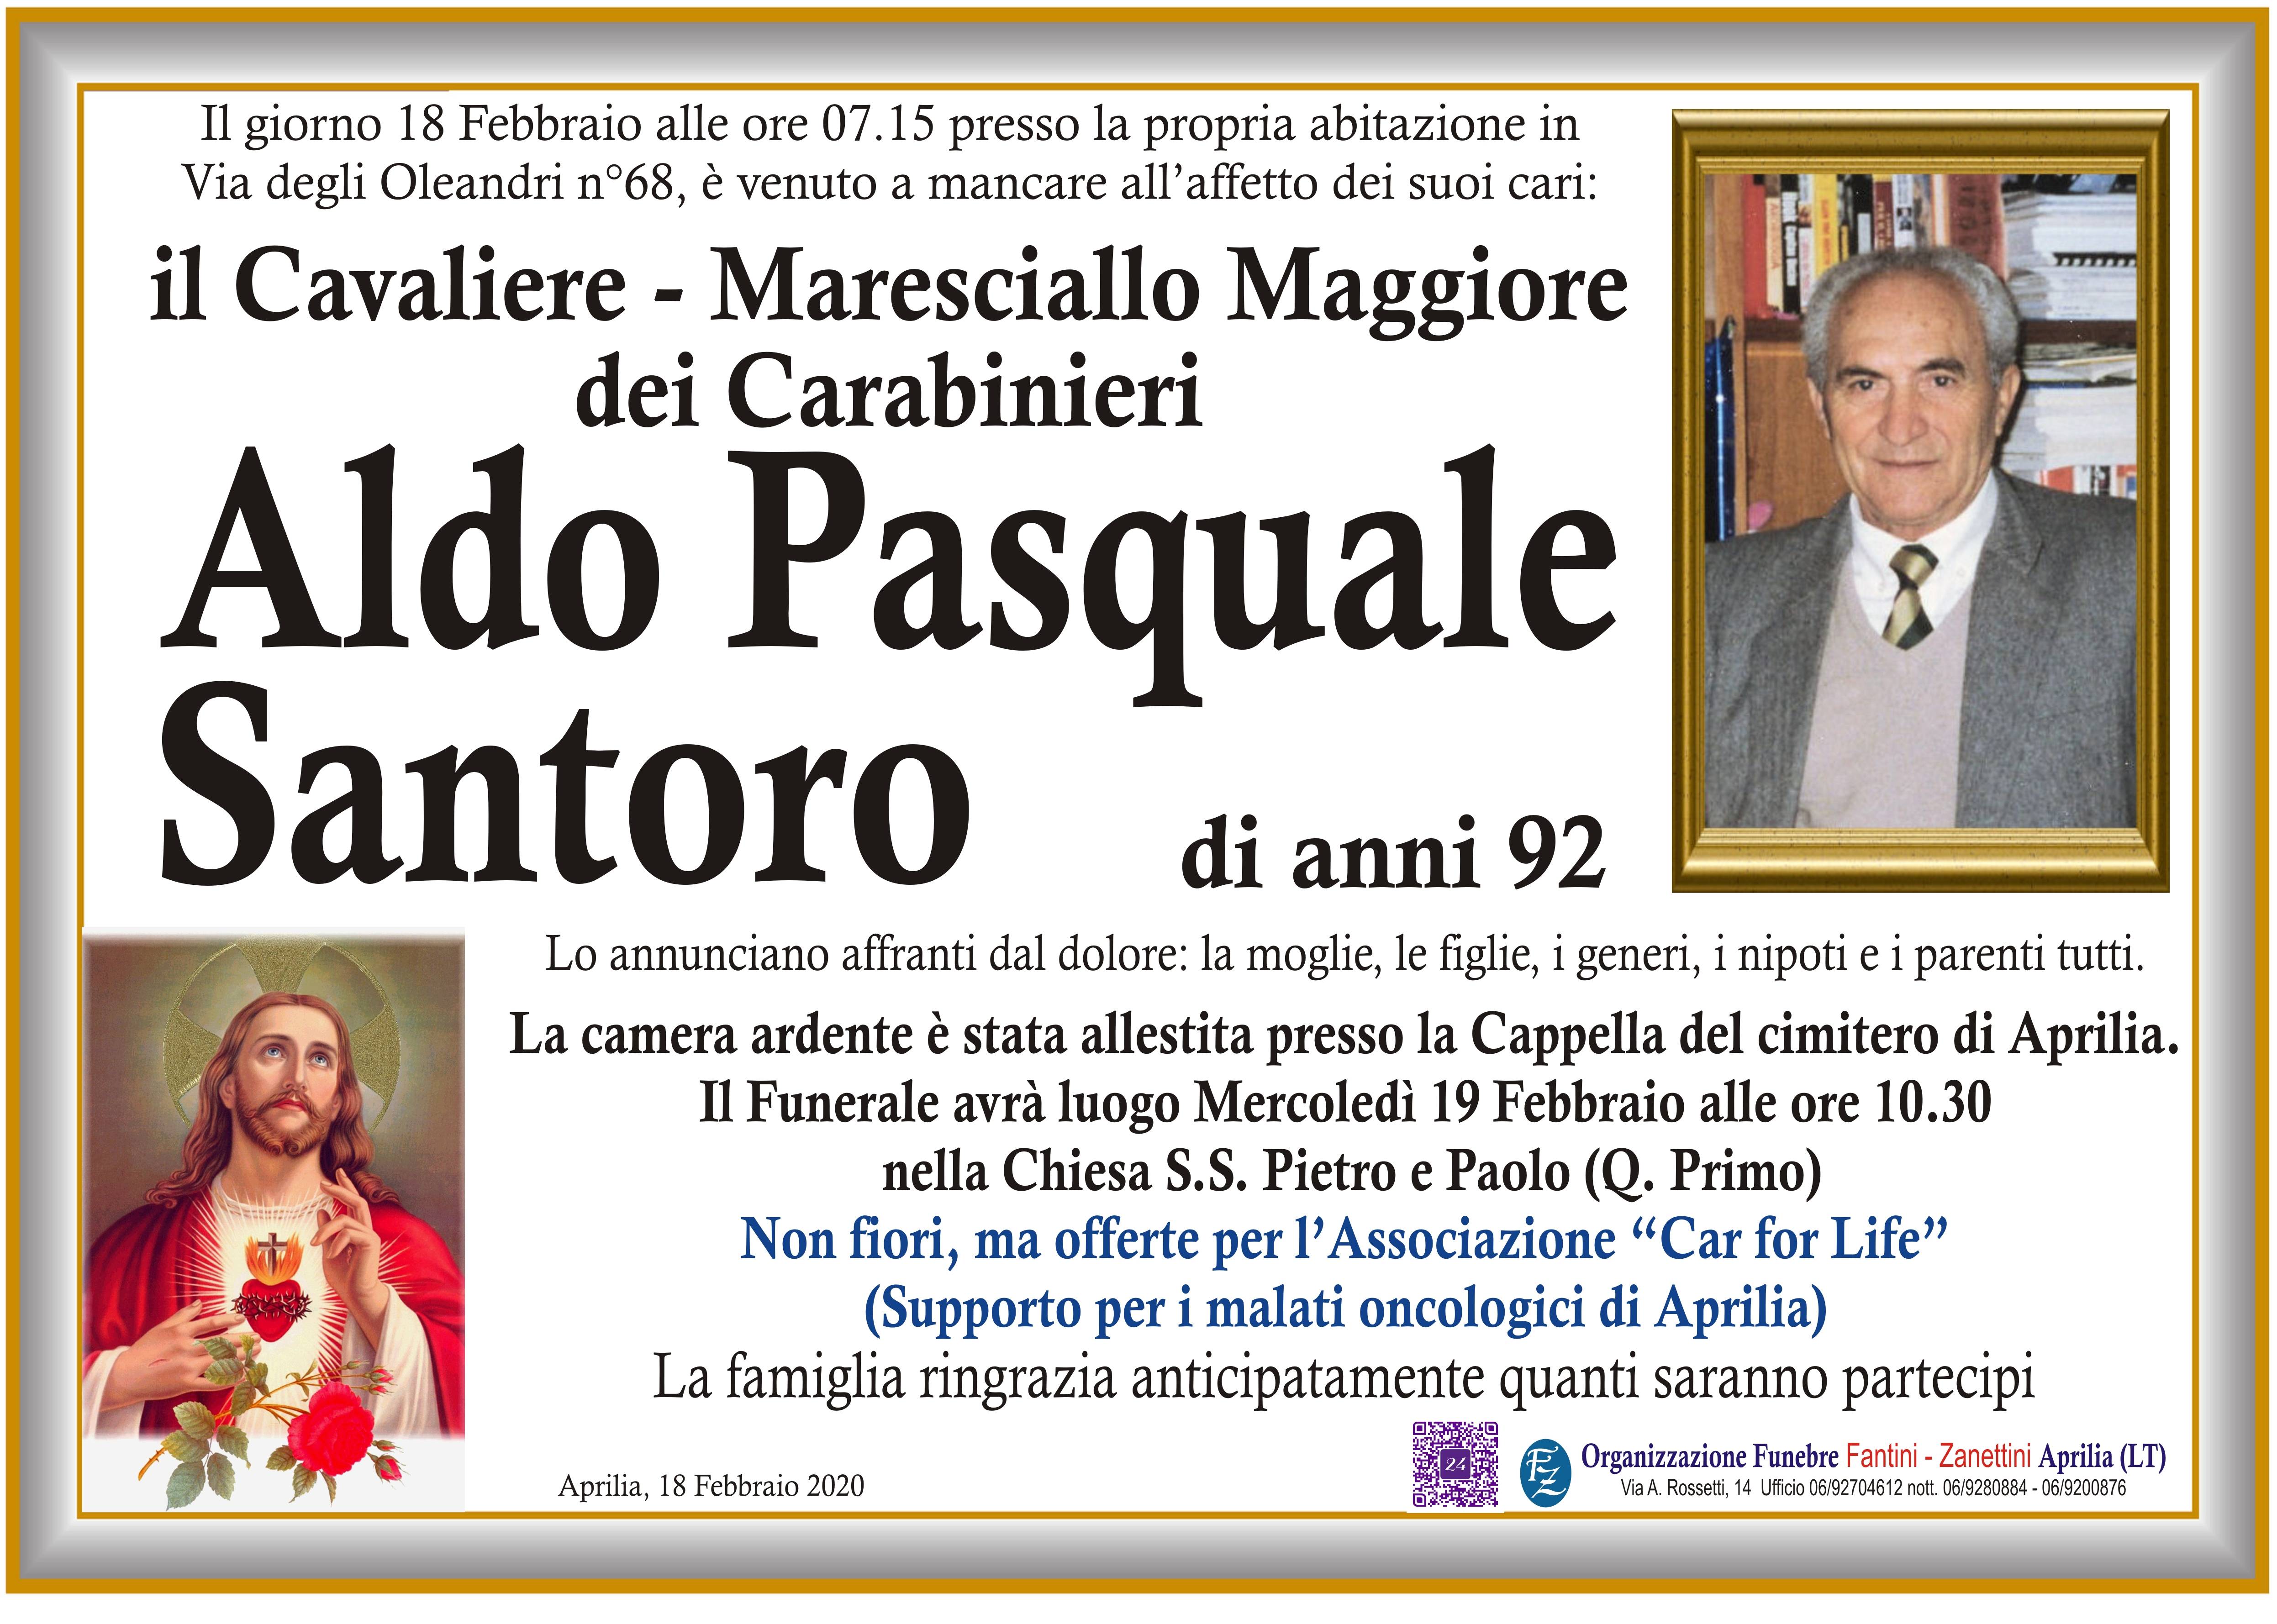 Cavaliere  Maresciallo Maggiore dei Carabinieri Aldo Pasquale Santoro